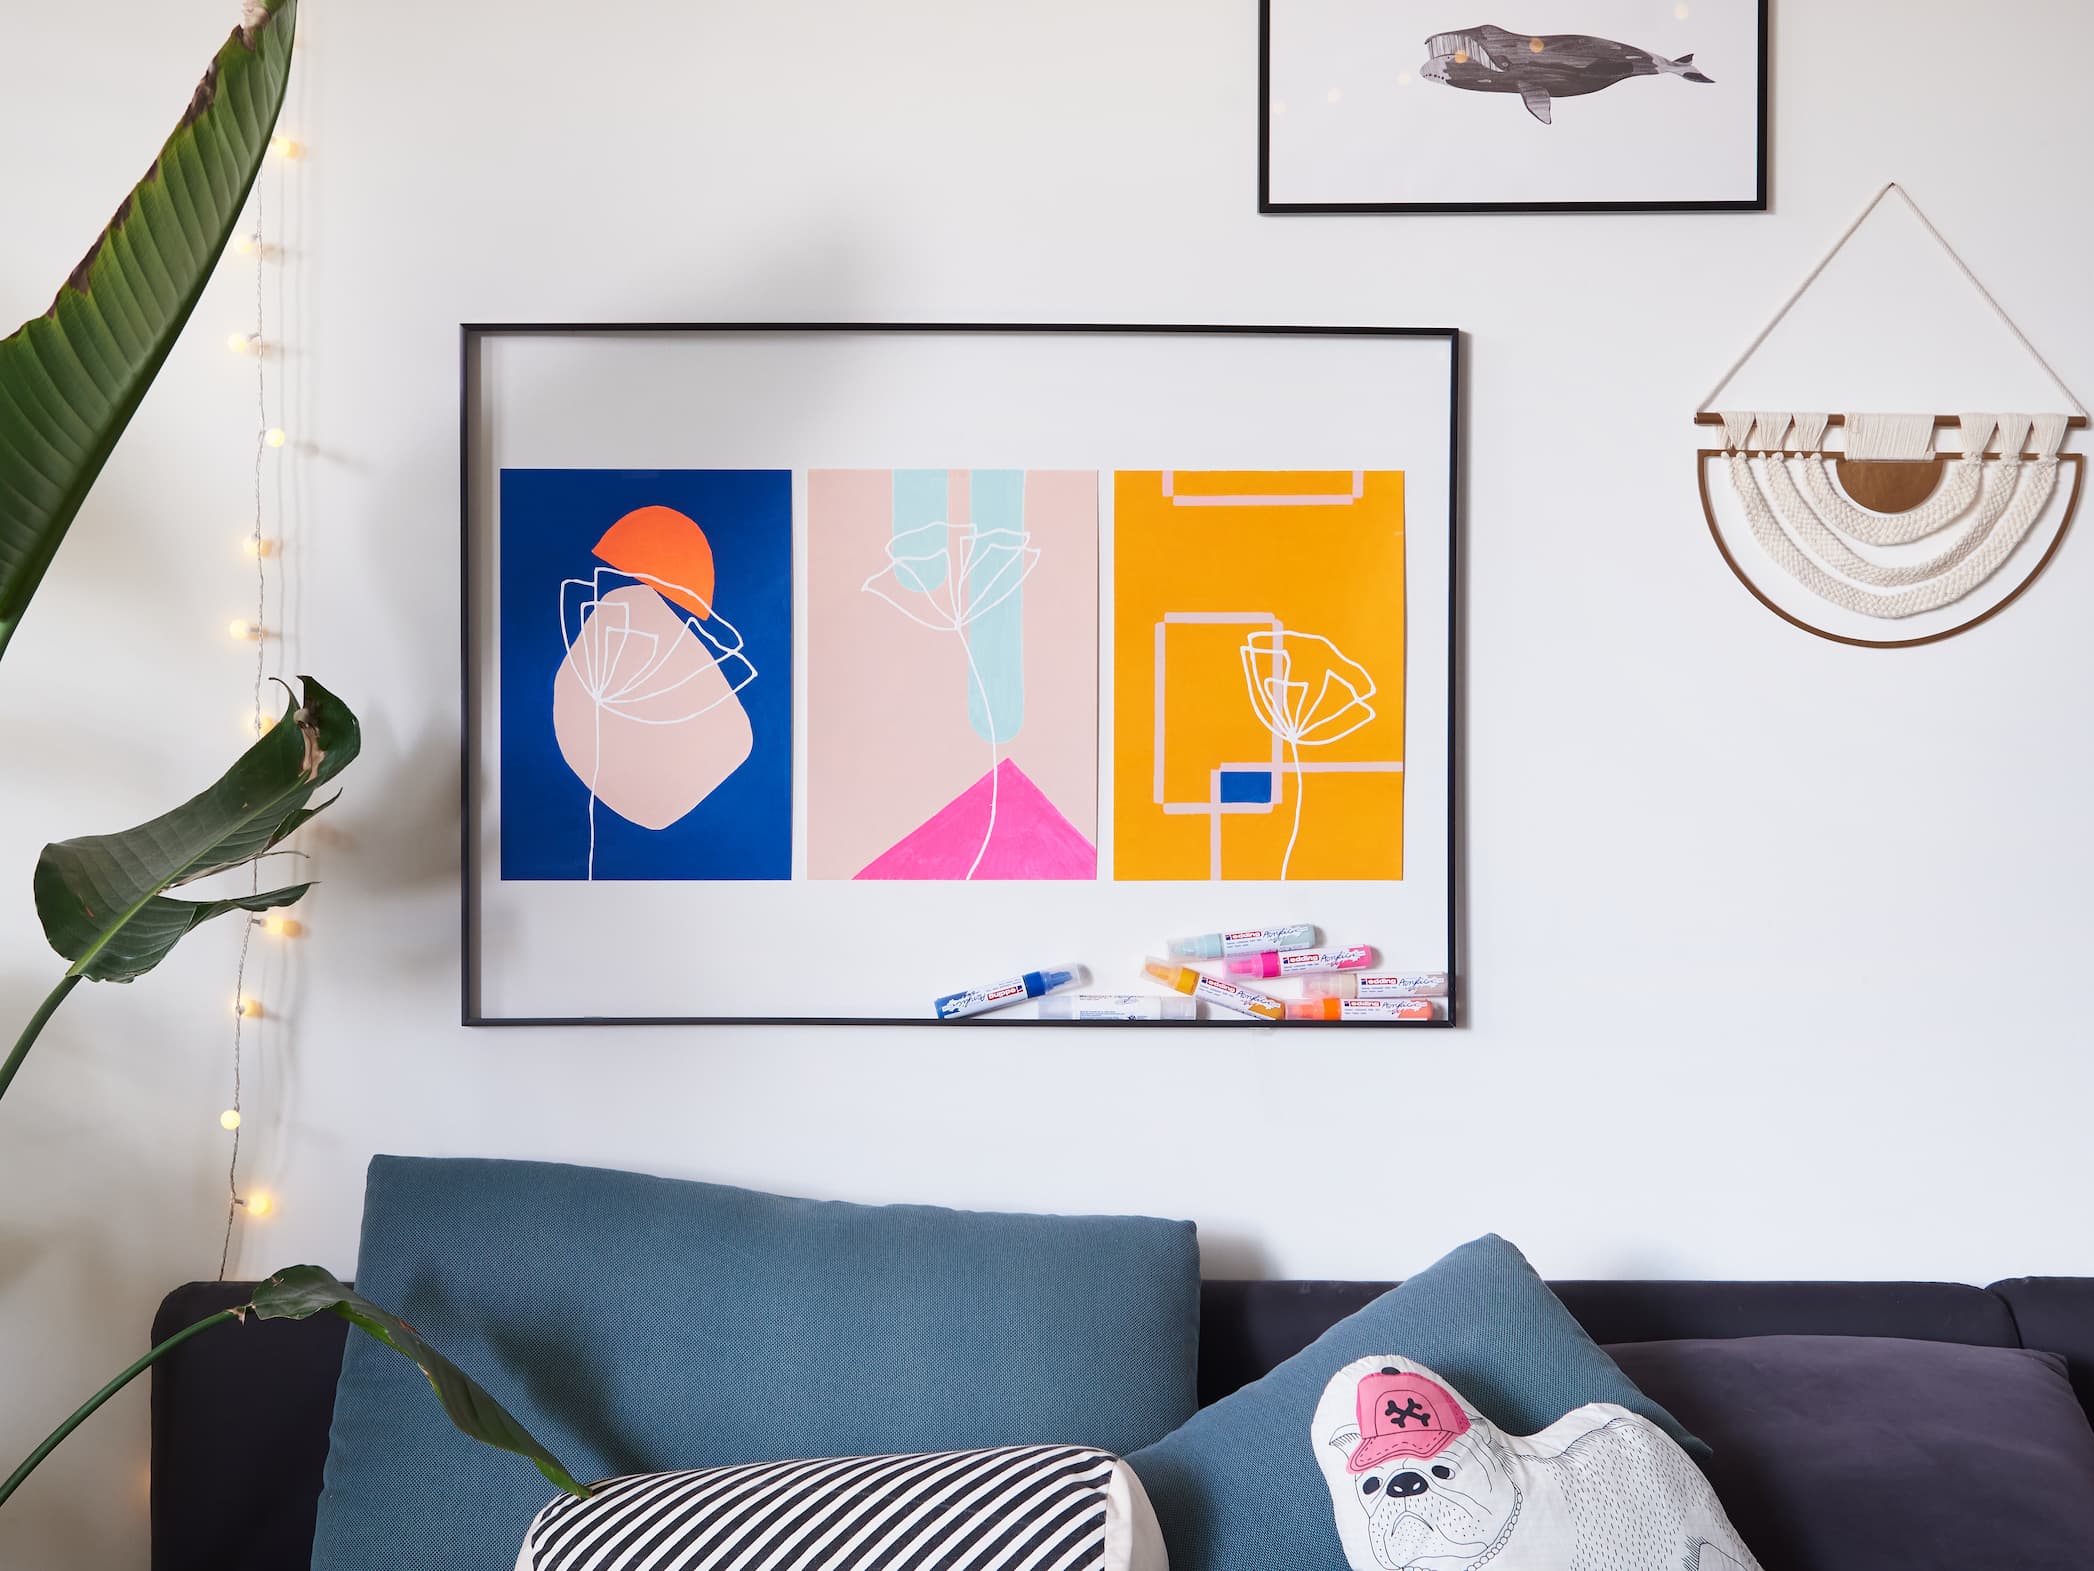 Moderne Wohnzimmerecke mit einem farbenfrohen abstrakten Kunstwerk, erstellt mit dem edding 5000 Acrylmarker breit von edding über einem blauen Sofa mit dekorativen Kissen, ergänzt durch eine Lichterkette, Haus.